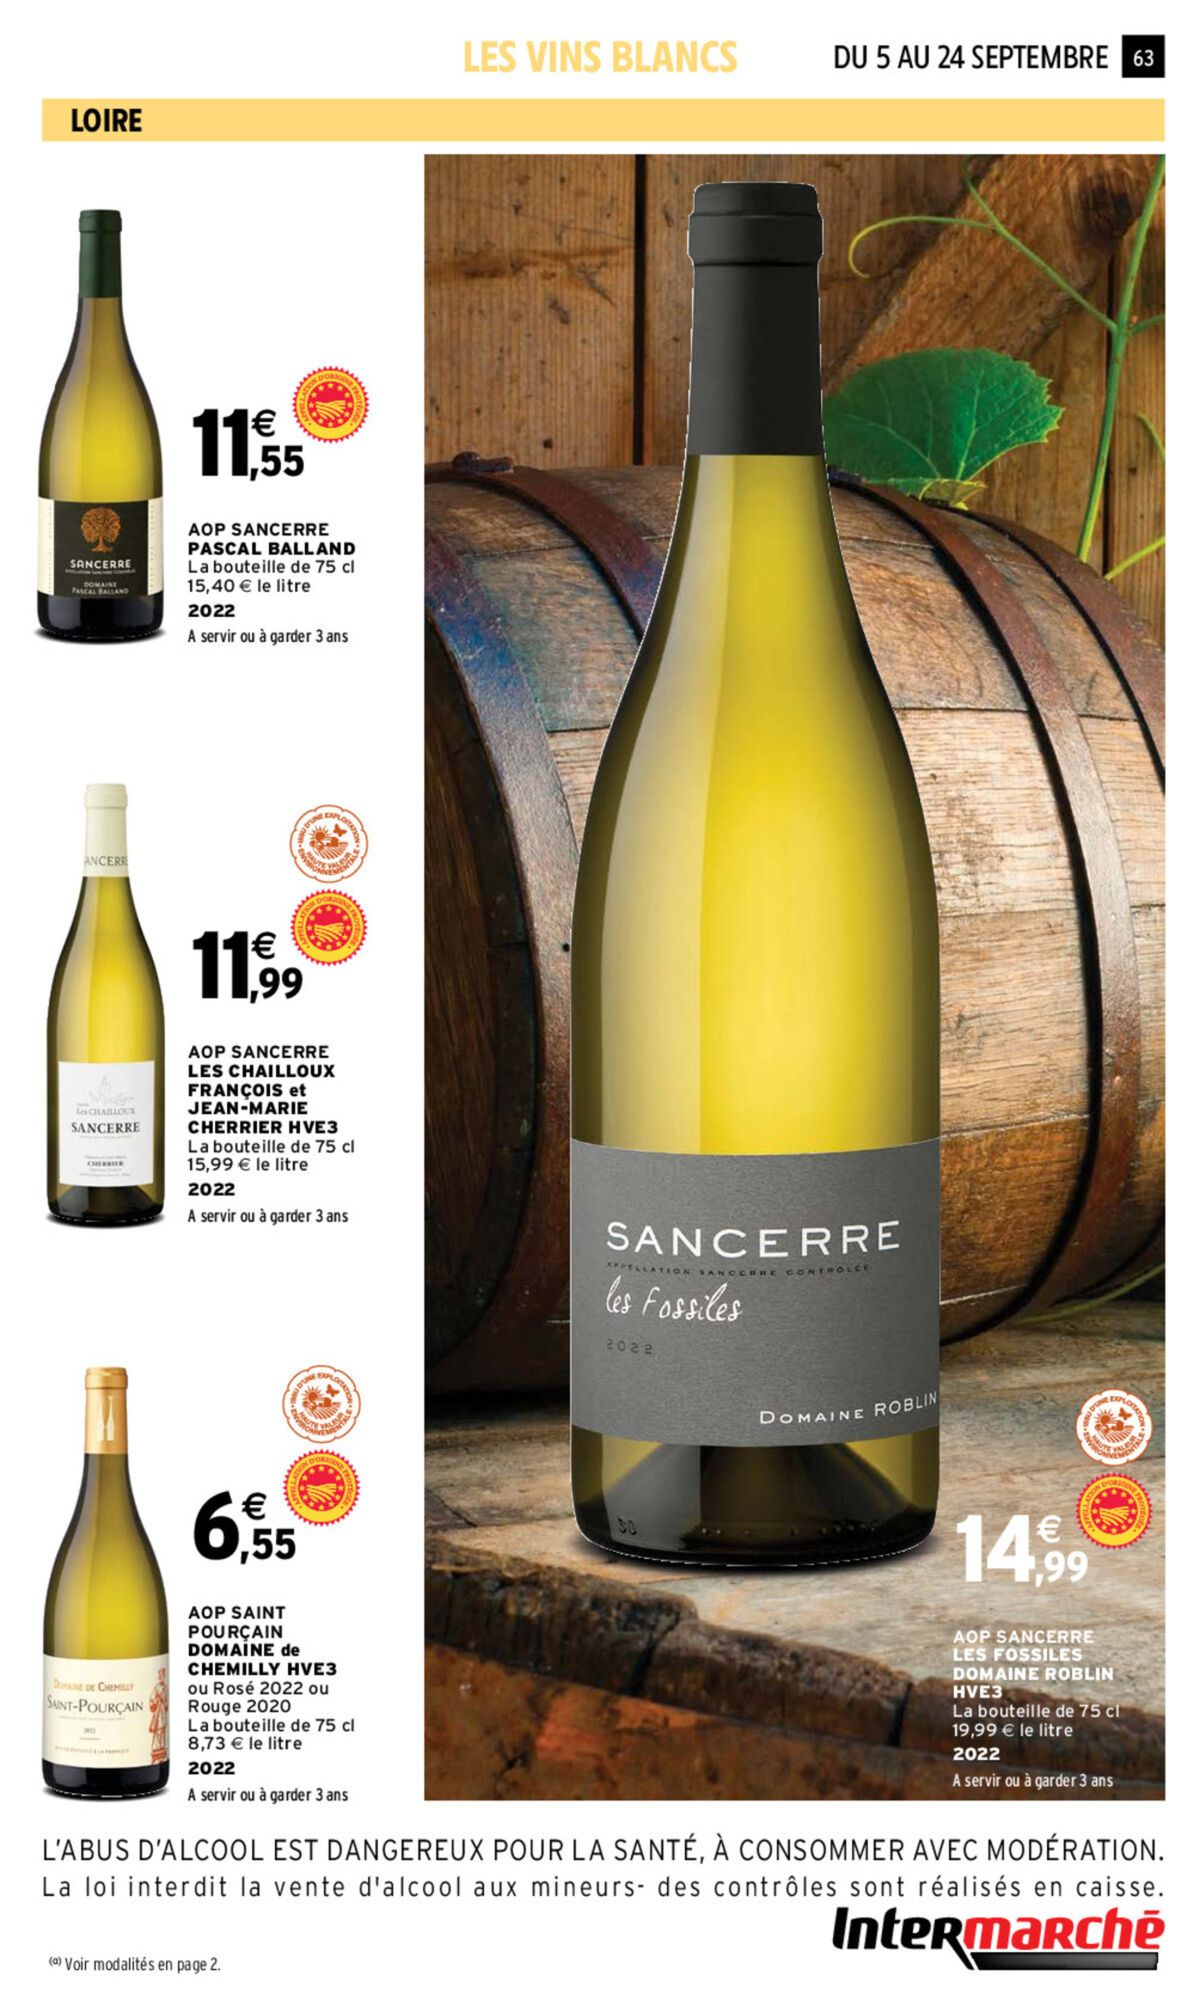 Catalogue Foire aux vins, page 00061